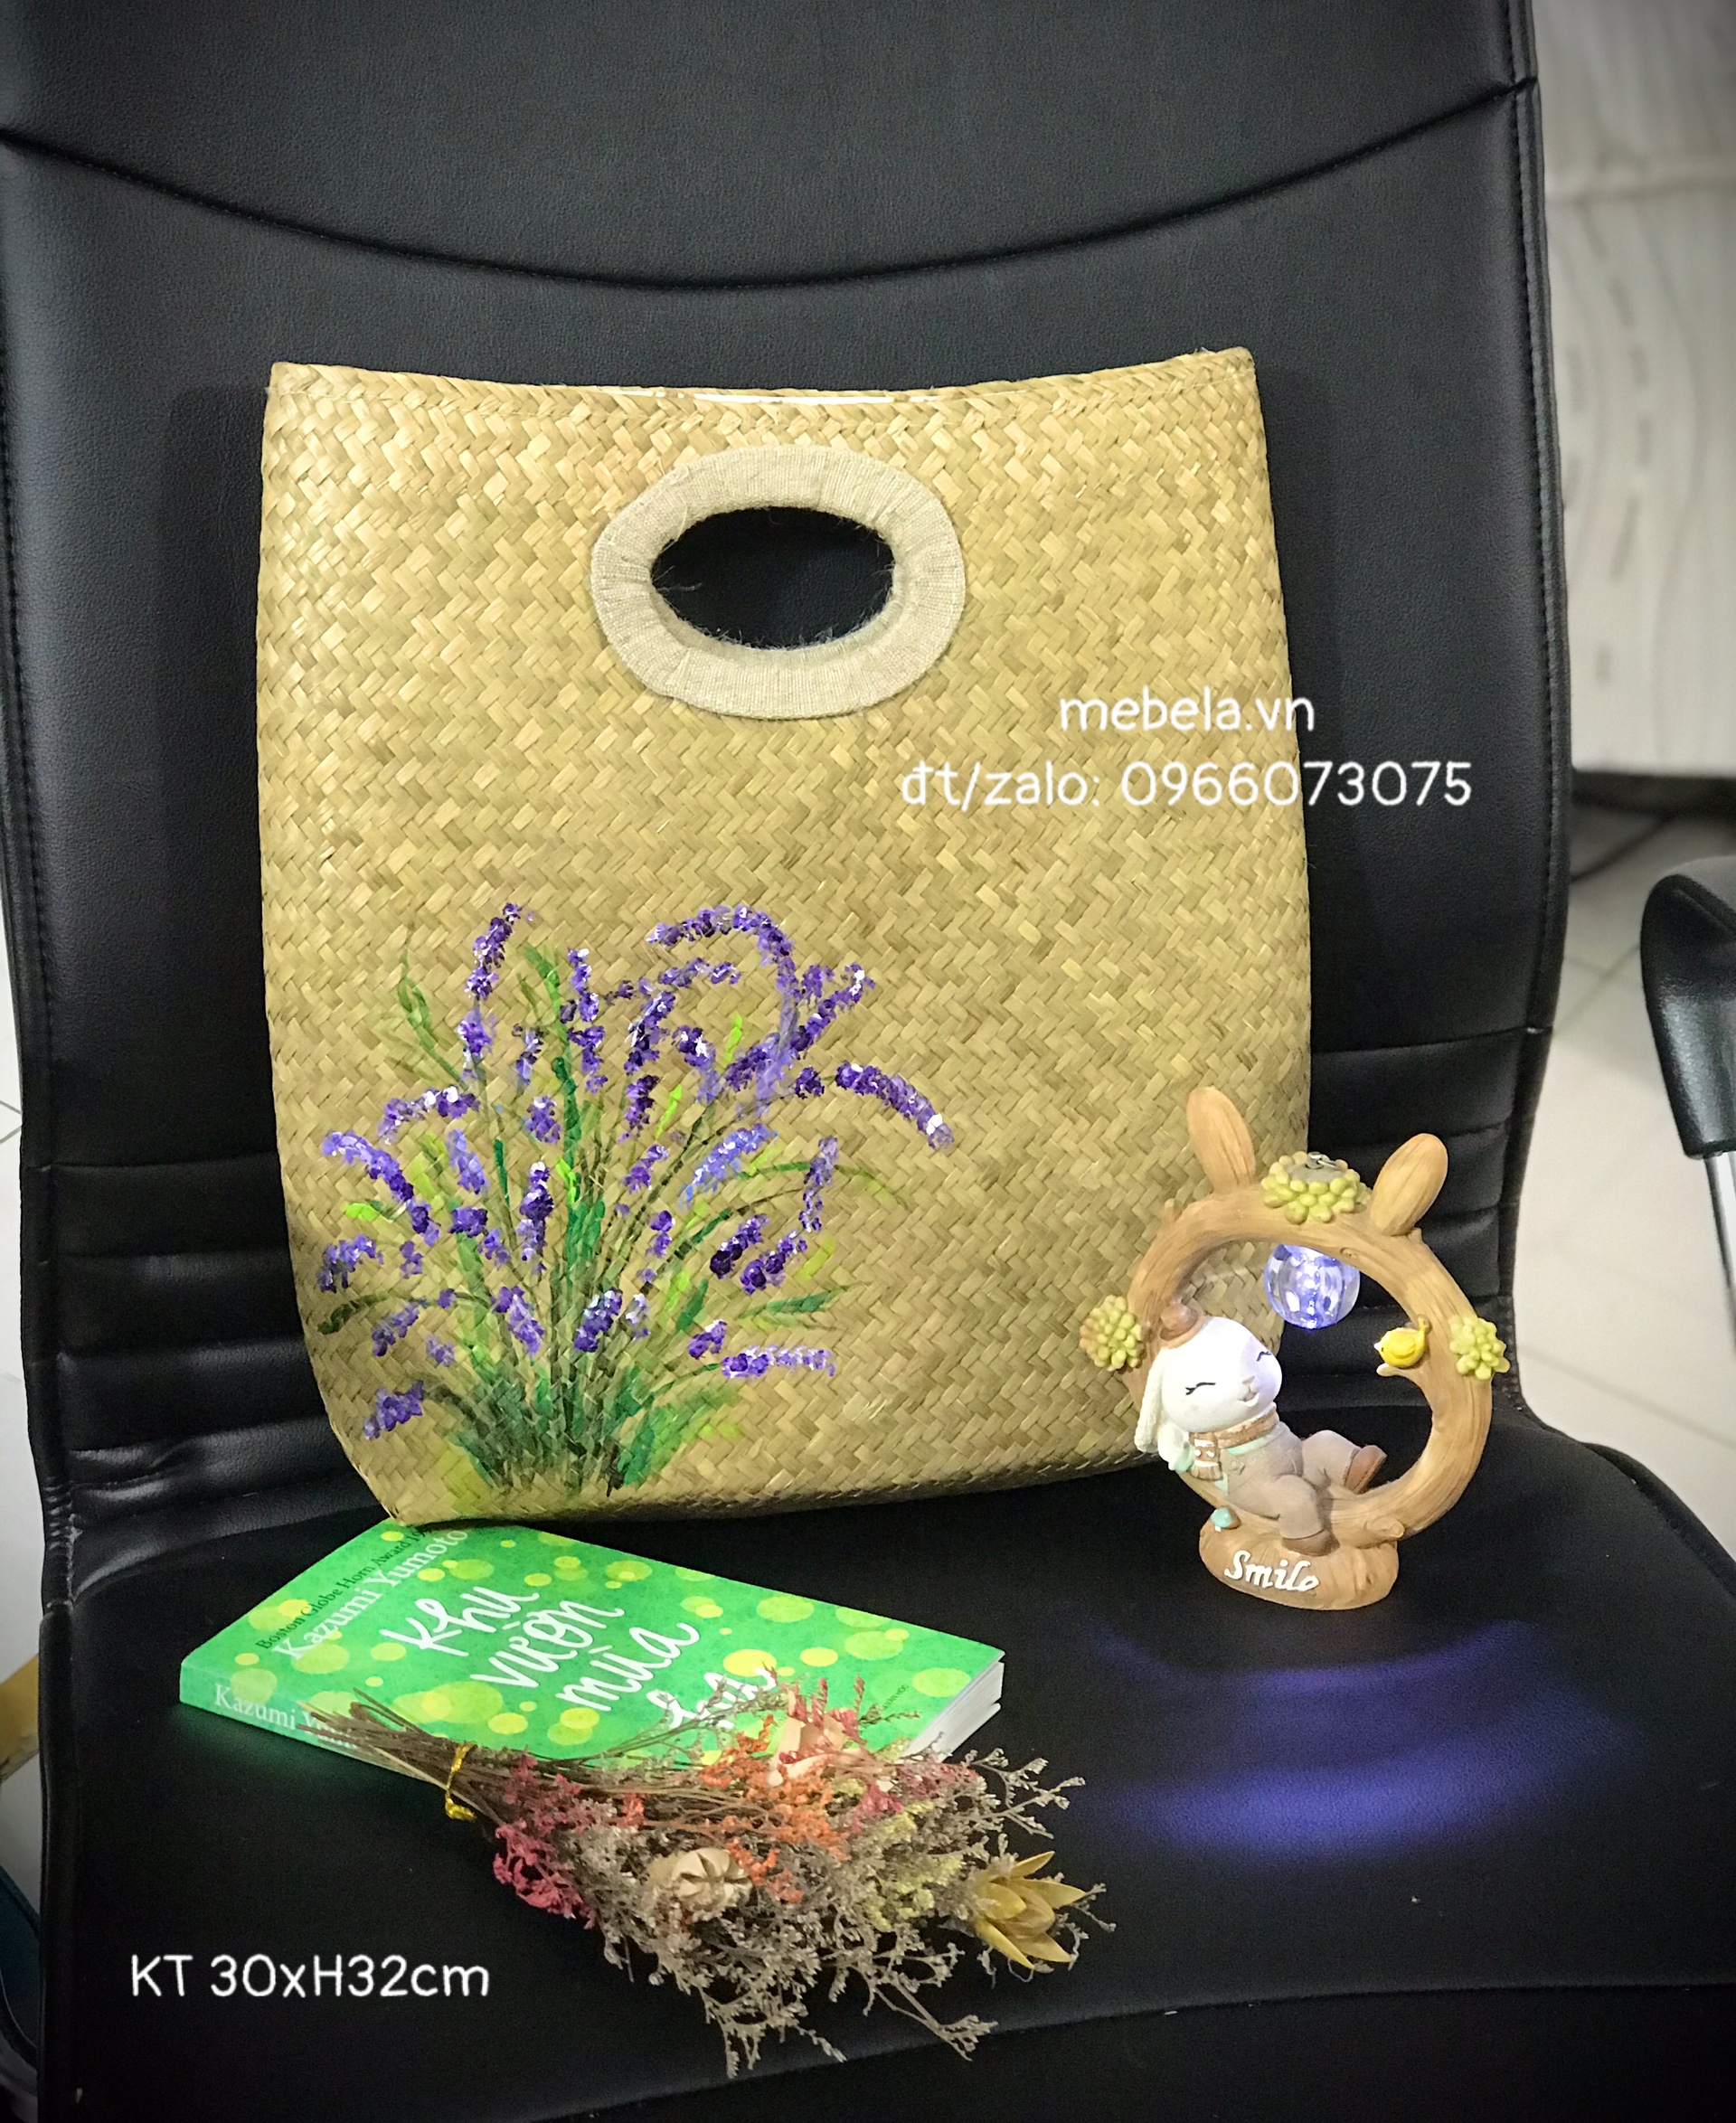 Giỏ cỏ bàng chữ nhật vẽ hoa Lavender tím xinh xắn